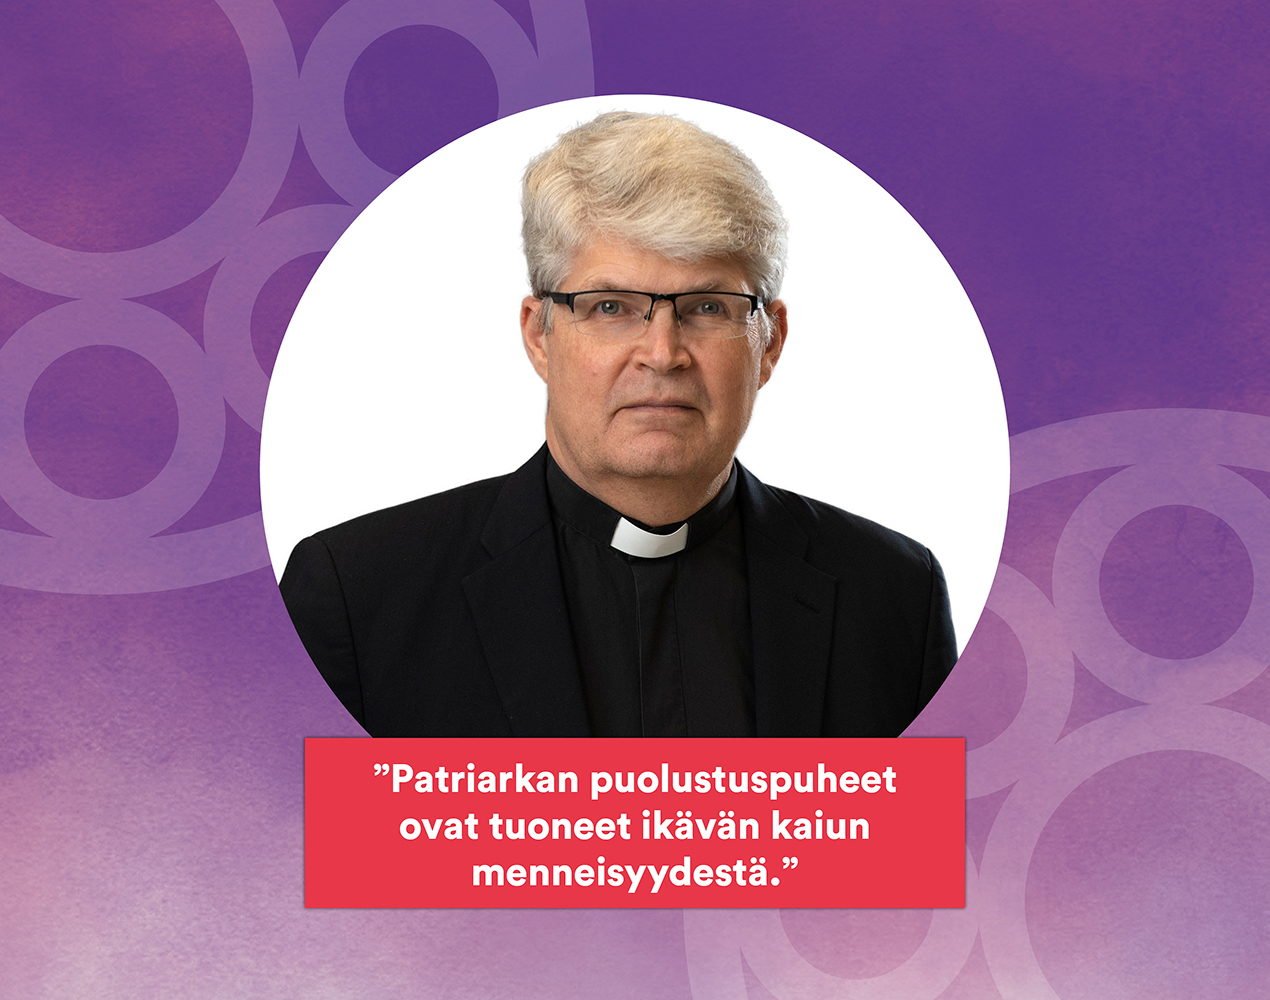 Rolf Steffanssonin kuvan päällä lukee Patriarkan puolustuspuheet ovat tuoneet ikävän kaiun menneisyydestä.